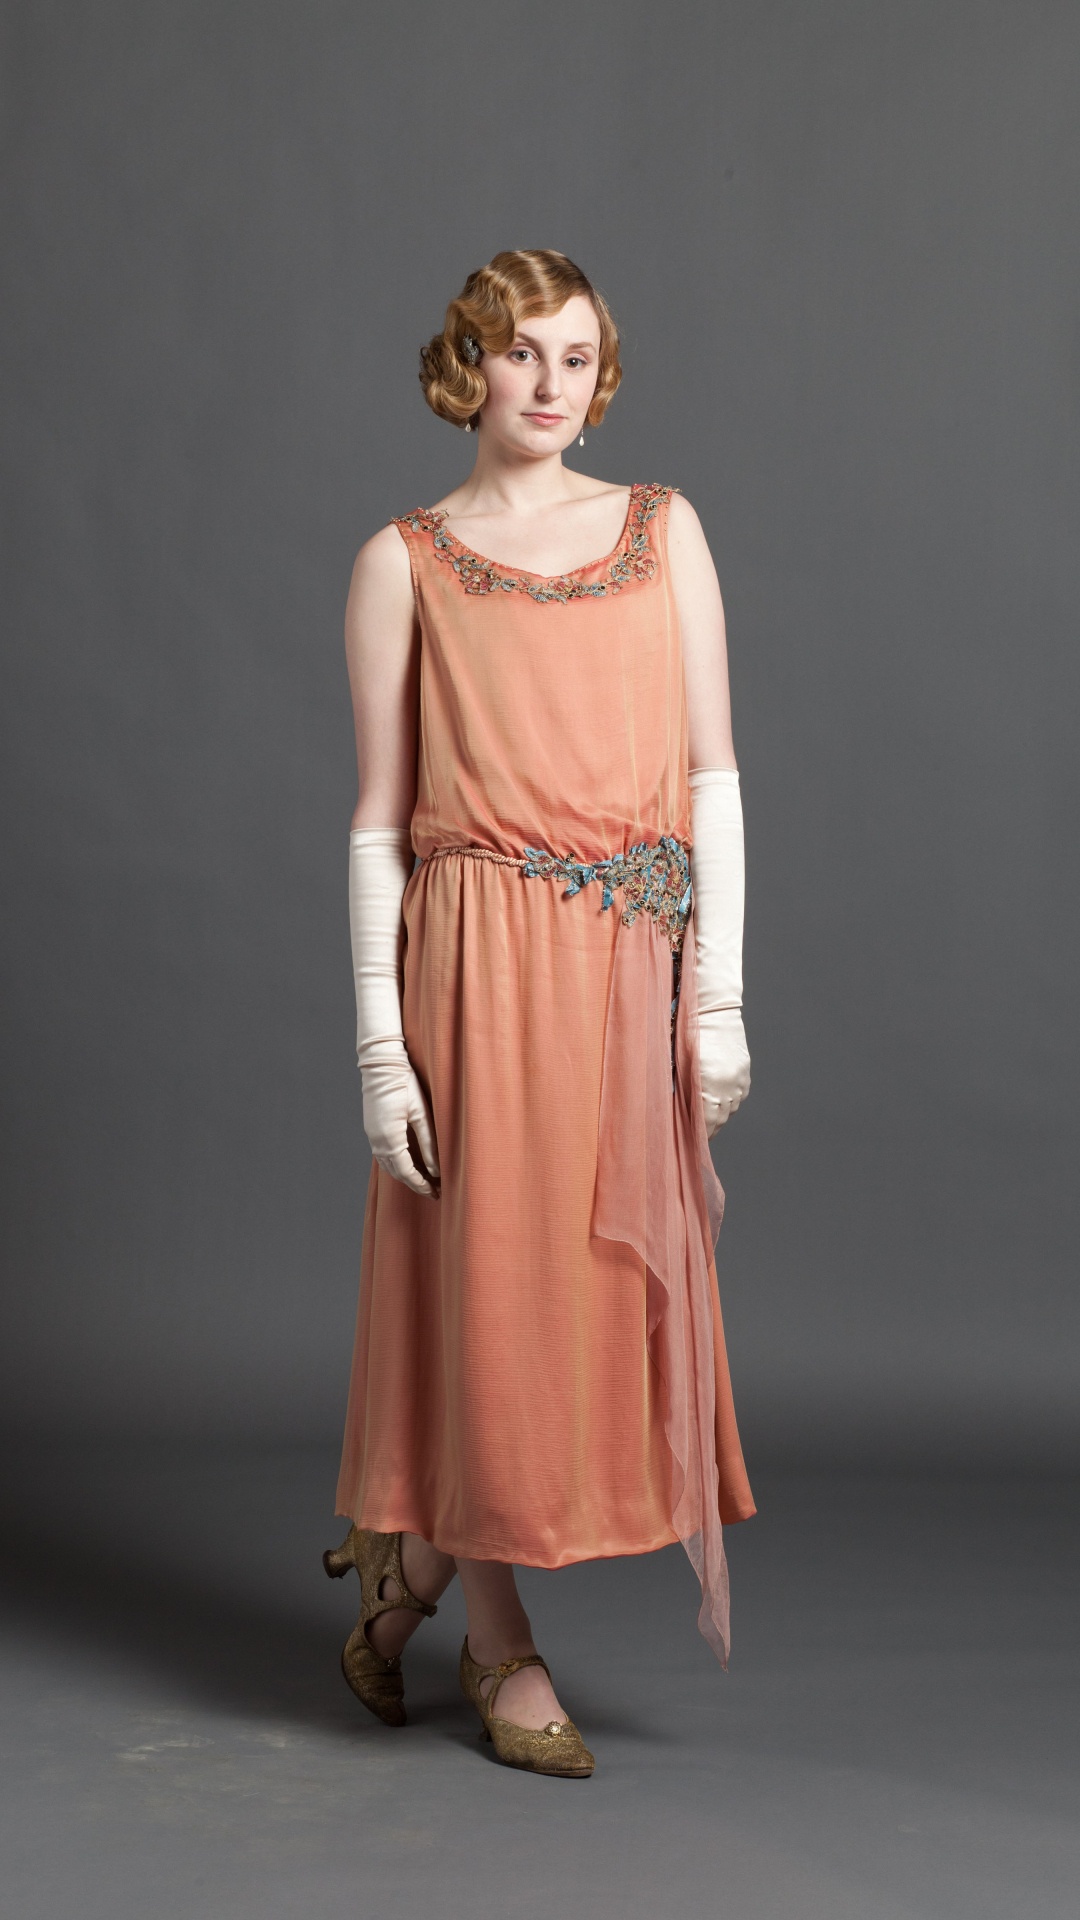 Laura Carmichael, Lady Edith Crawley, Downton Abbey, Dress, Clothing. Wallpaper in 1080x1920 Resolution